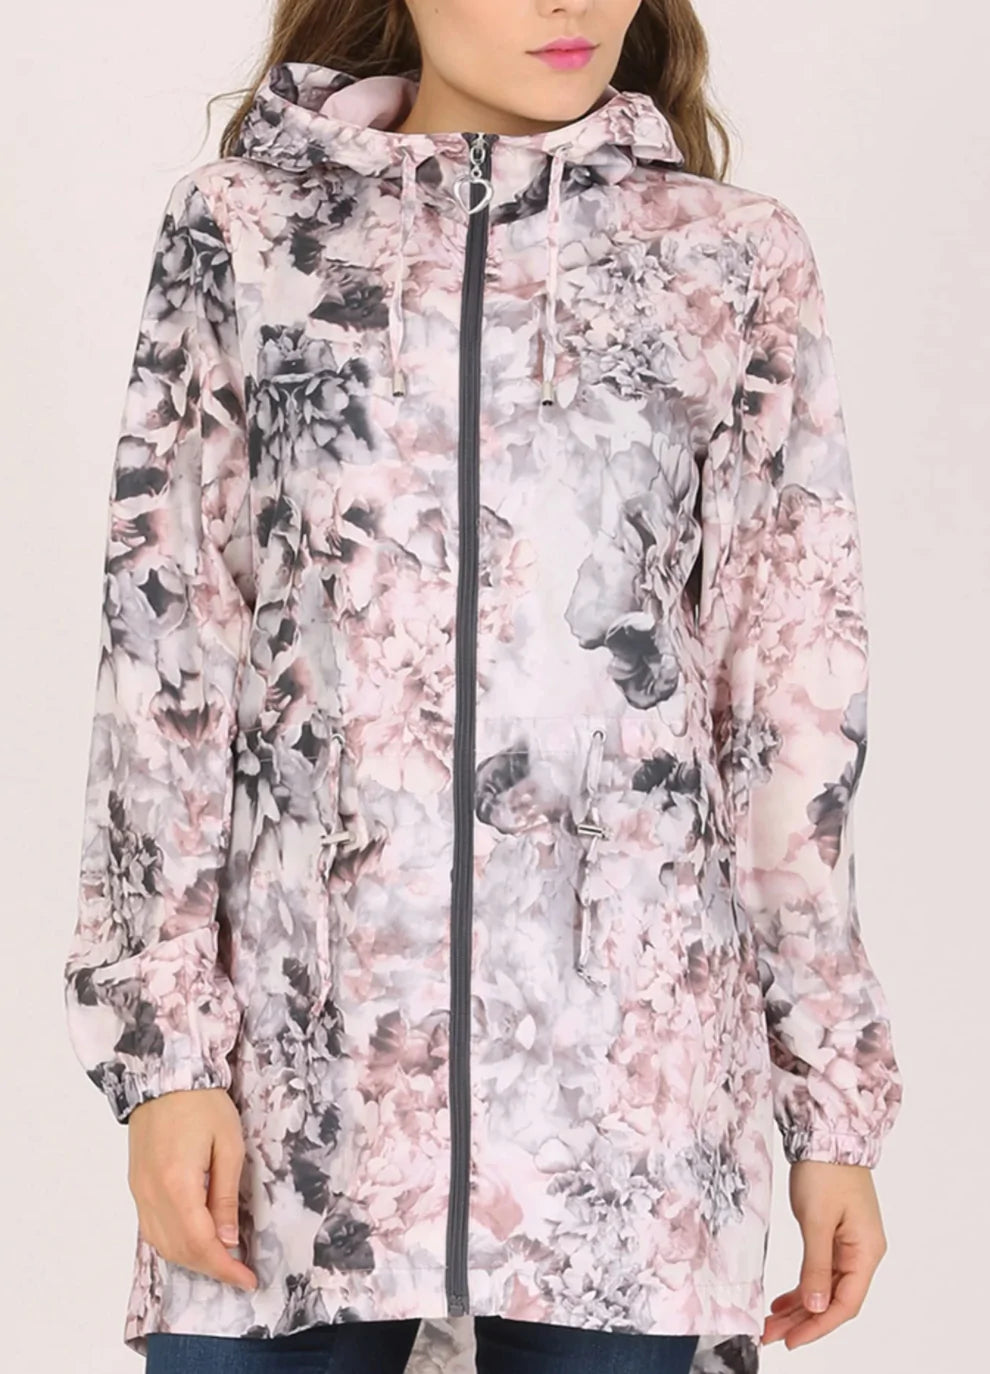 David Barry Waterproof Jacket floral print